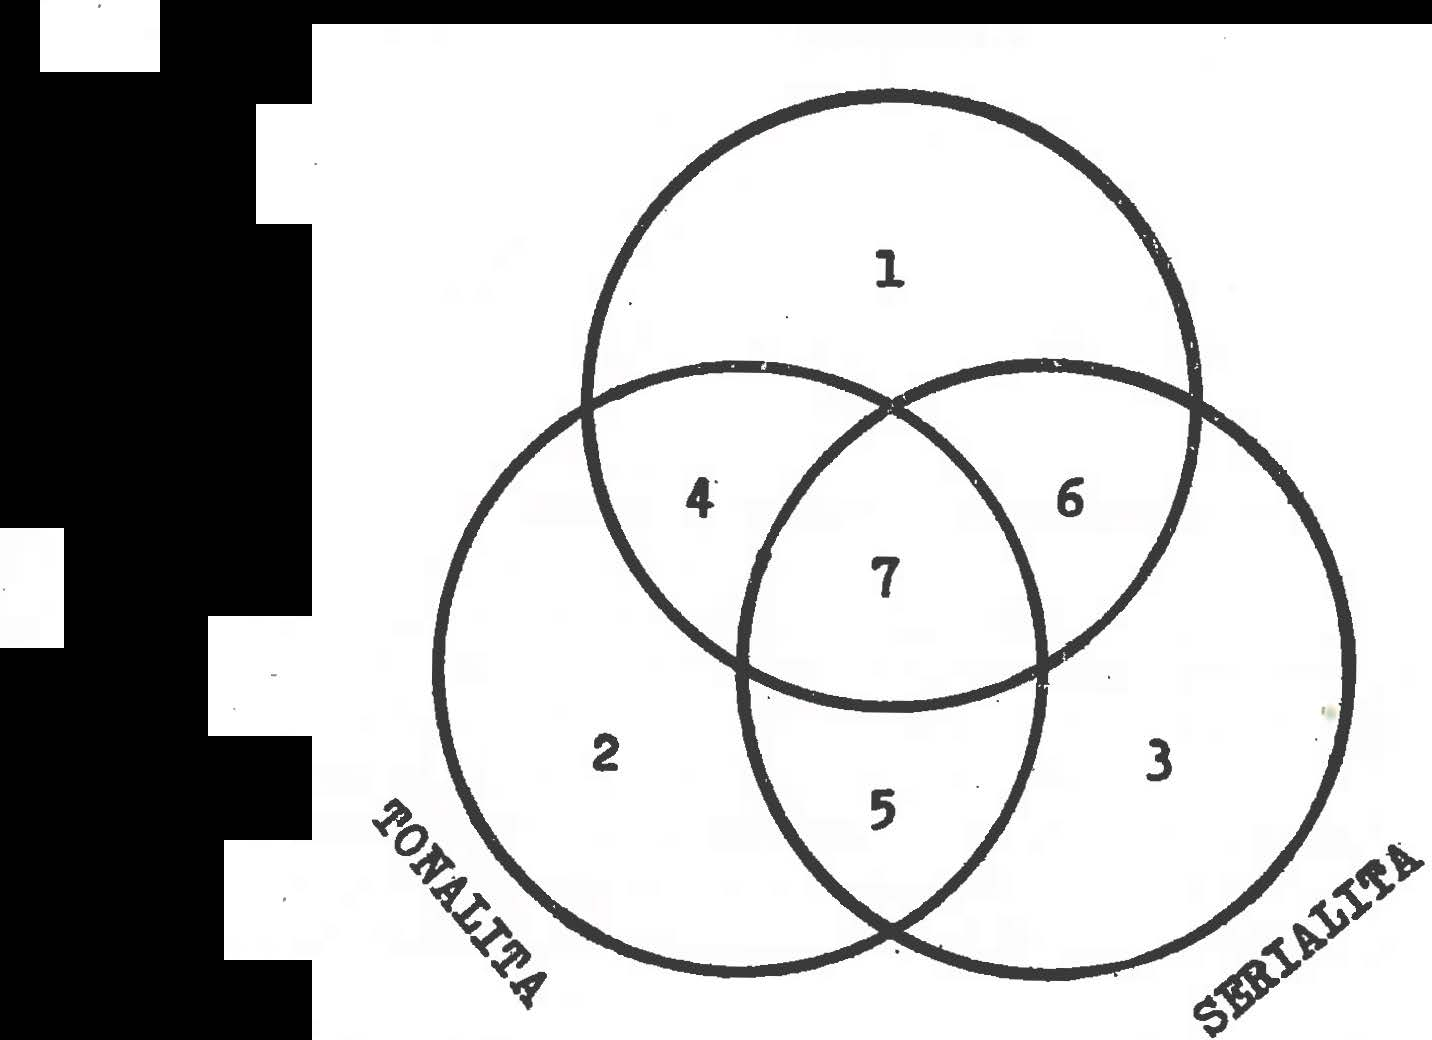 ' funkčně harmonické vztahy, které v této struktuře mohou nebo nemusí vzniknout, tj. centrická hieratchié6), kterou tóny a jejich útvary vertikální i horizontální navzájem vytvářejí.